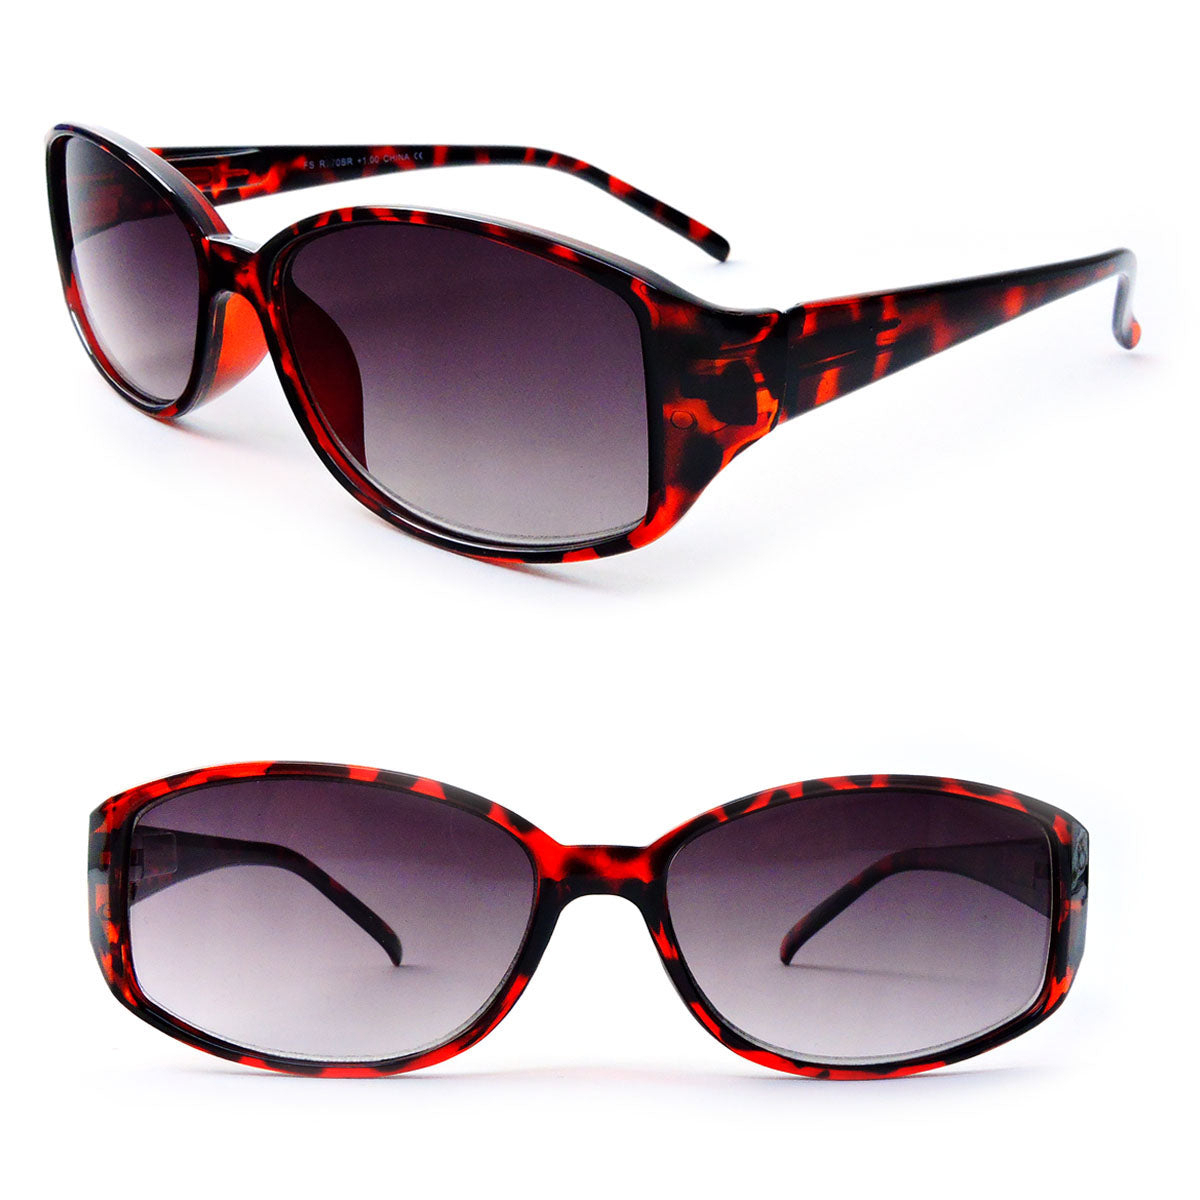 Classic Sun Readers Full Lens Spring Hinges Reading Sunglasses For Women - Tortoise, +1.00